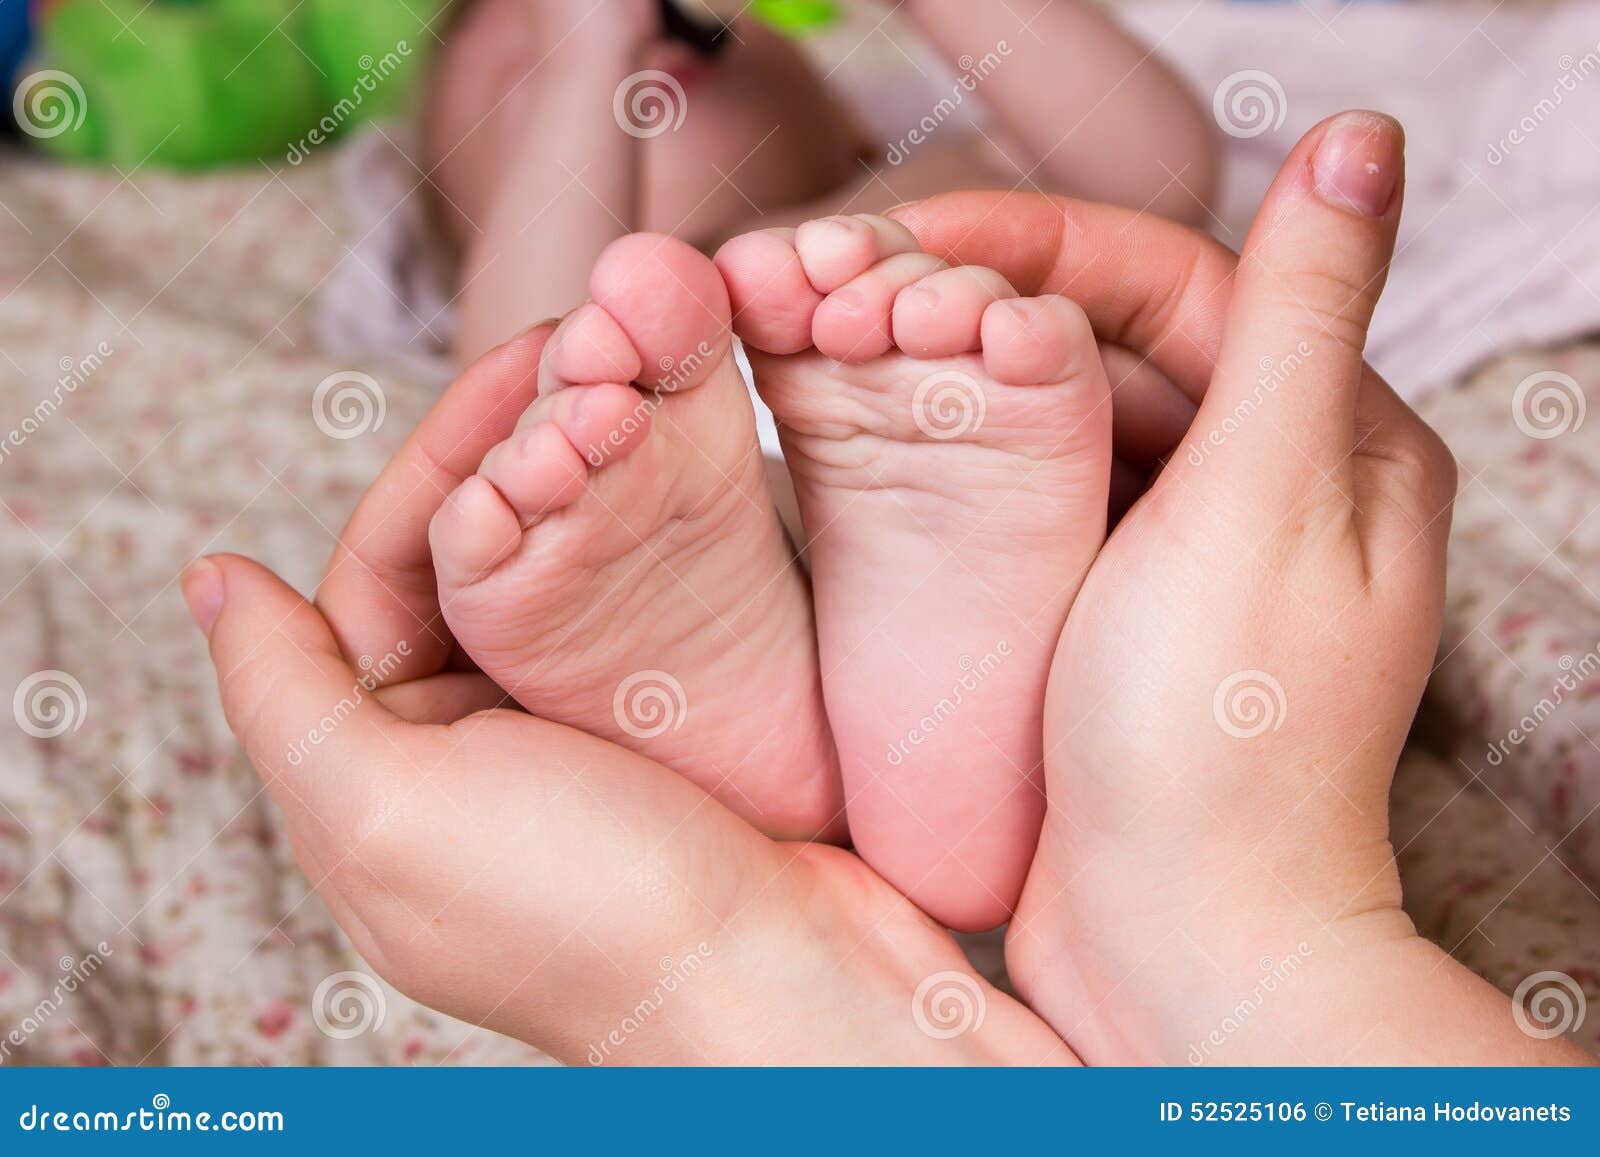 Ноги мамы для детей. Ноги мамы и ребёнка. Мама руки ноги. Стопы детей девочек. Нежные ножки мамы.